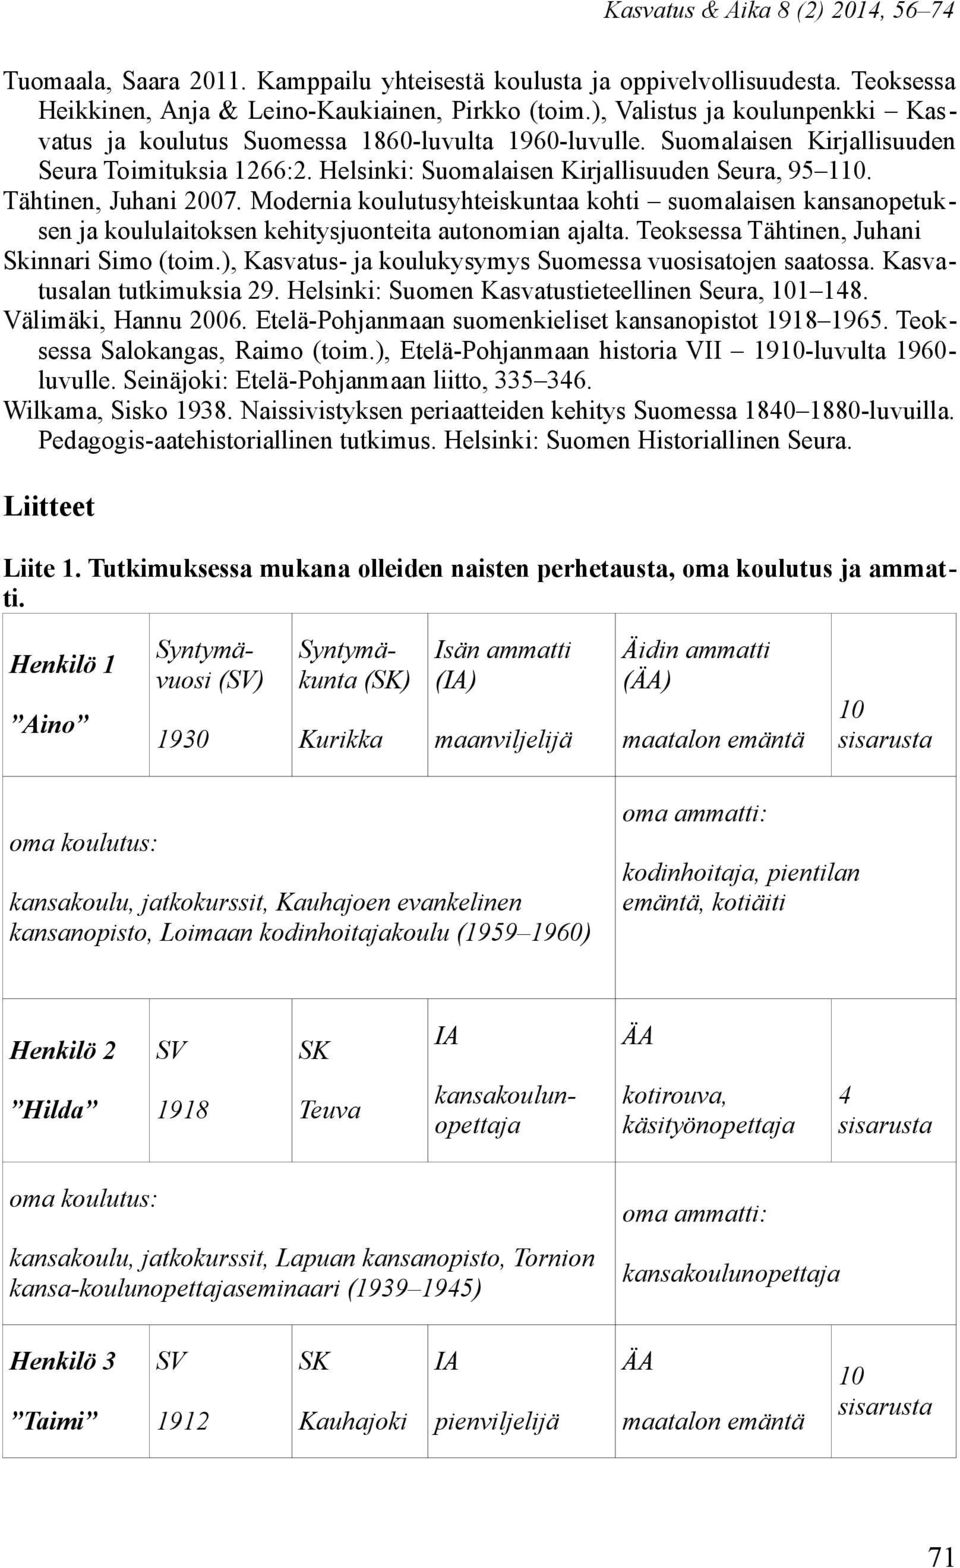 Tähtinen, Juhani 2007. Modernia koulutusyhteiskuntaa kohti suomalaisen kansanopetuksen ja koululaitoksen kehitysjuonteita autonomian ajalta. Teoksessa Tähtinen, Juhani Skinnari Simo (toim.